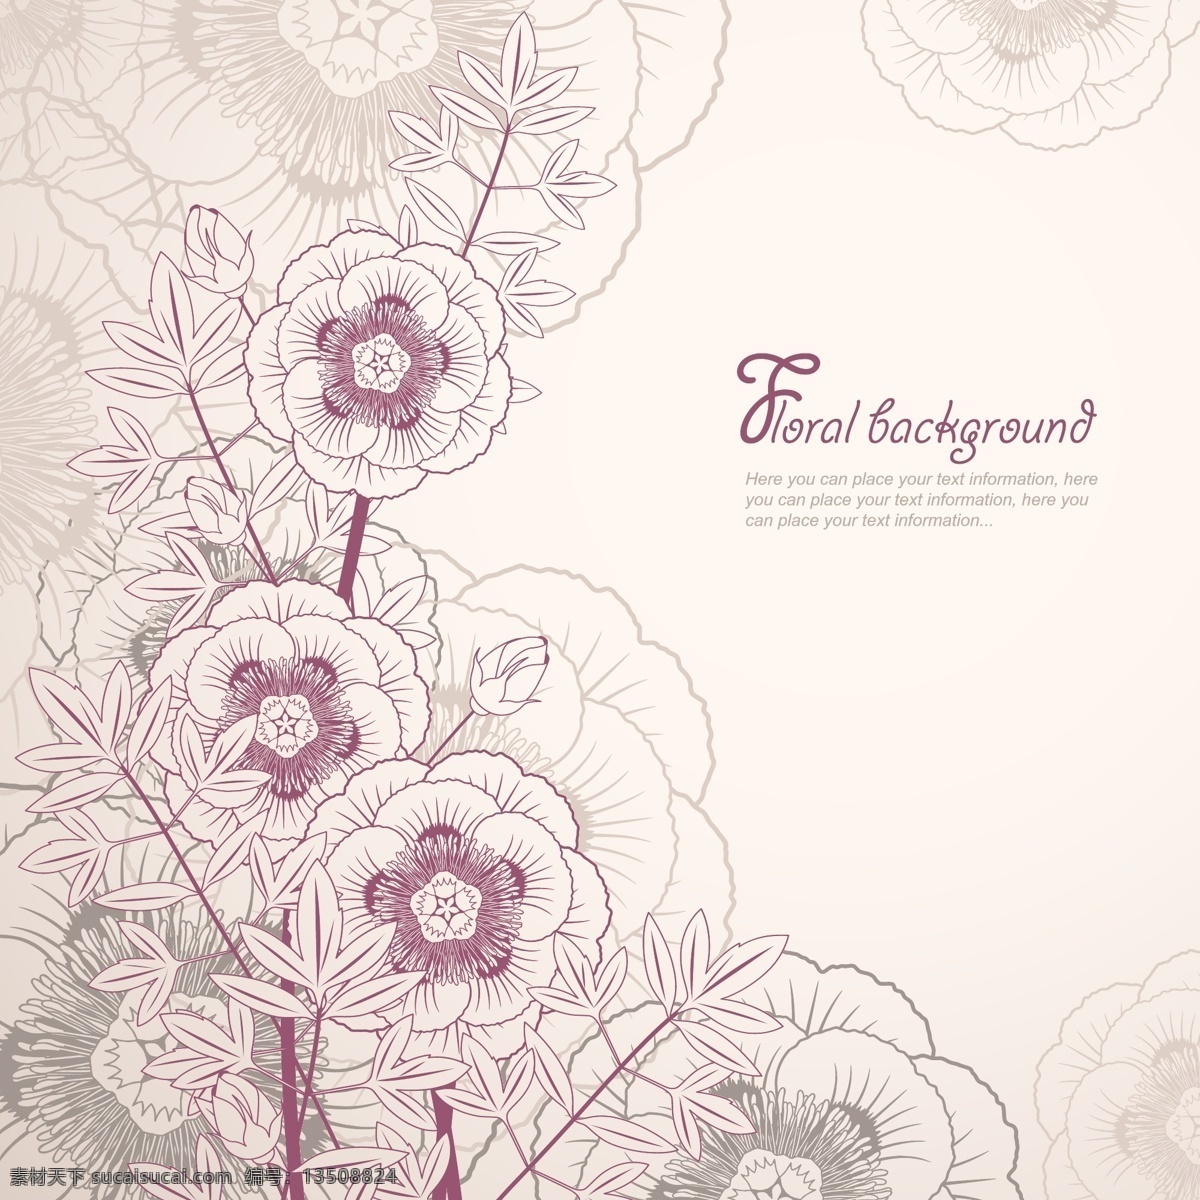 紫色 花朵 剪影 背景 背景壁纸 花卉和漩涡